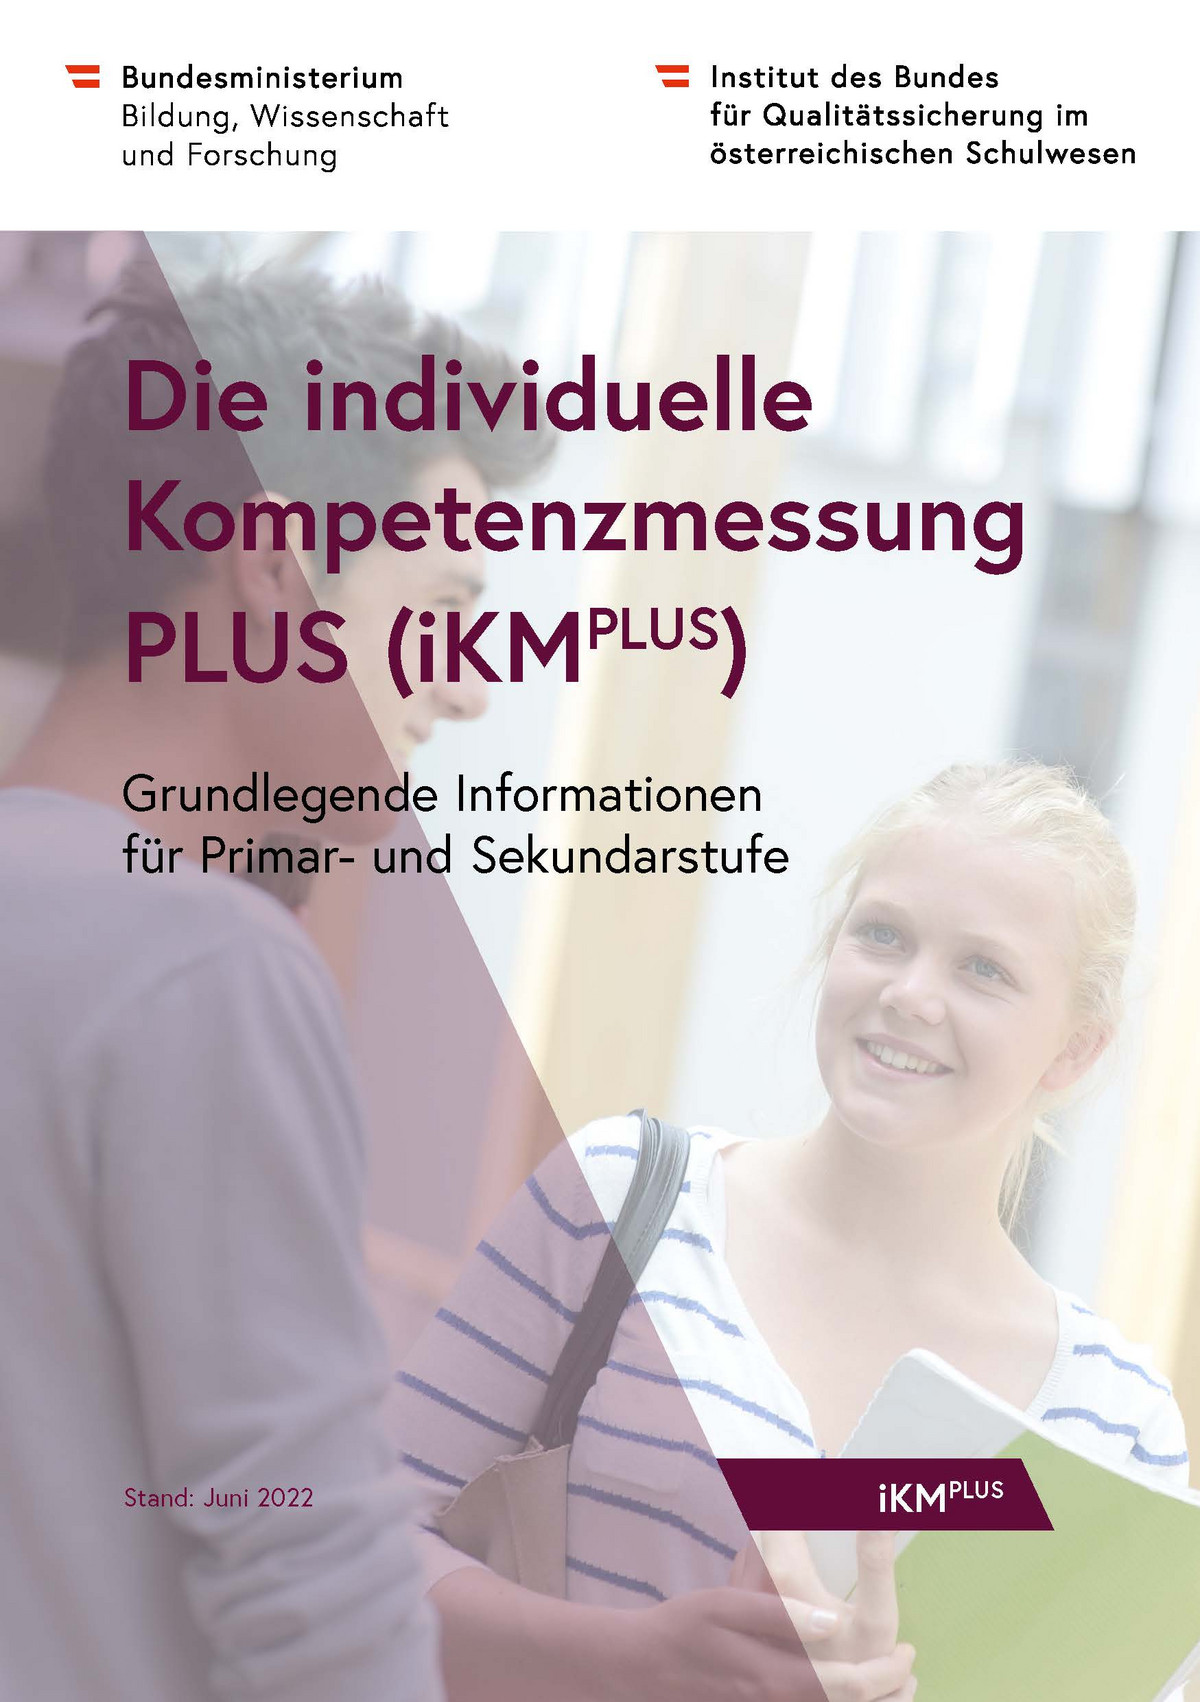 Titelseite der Informationsbroschüre "Die individuelle Kompetenzmessung PLUS"